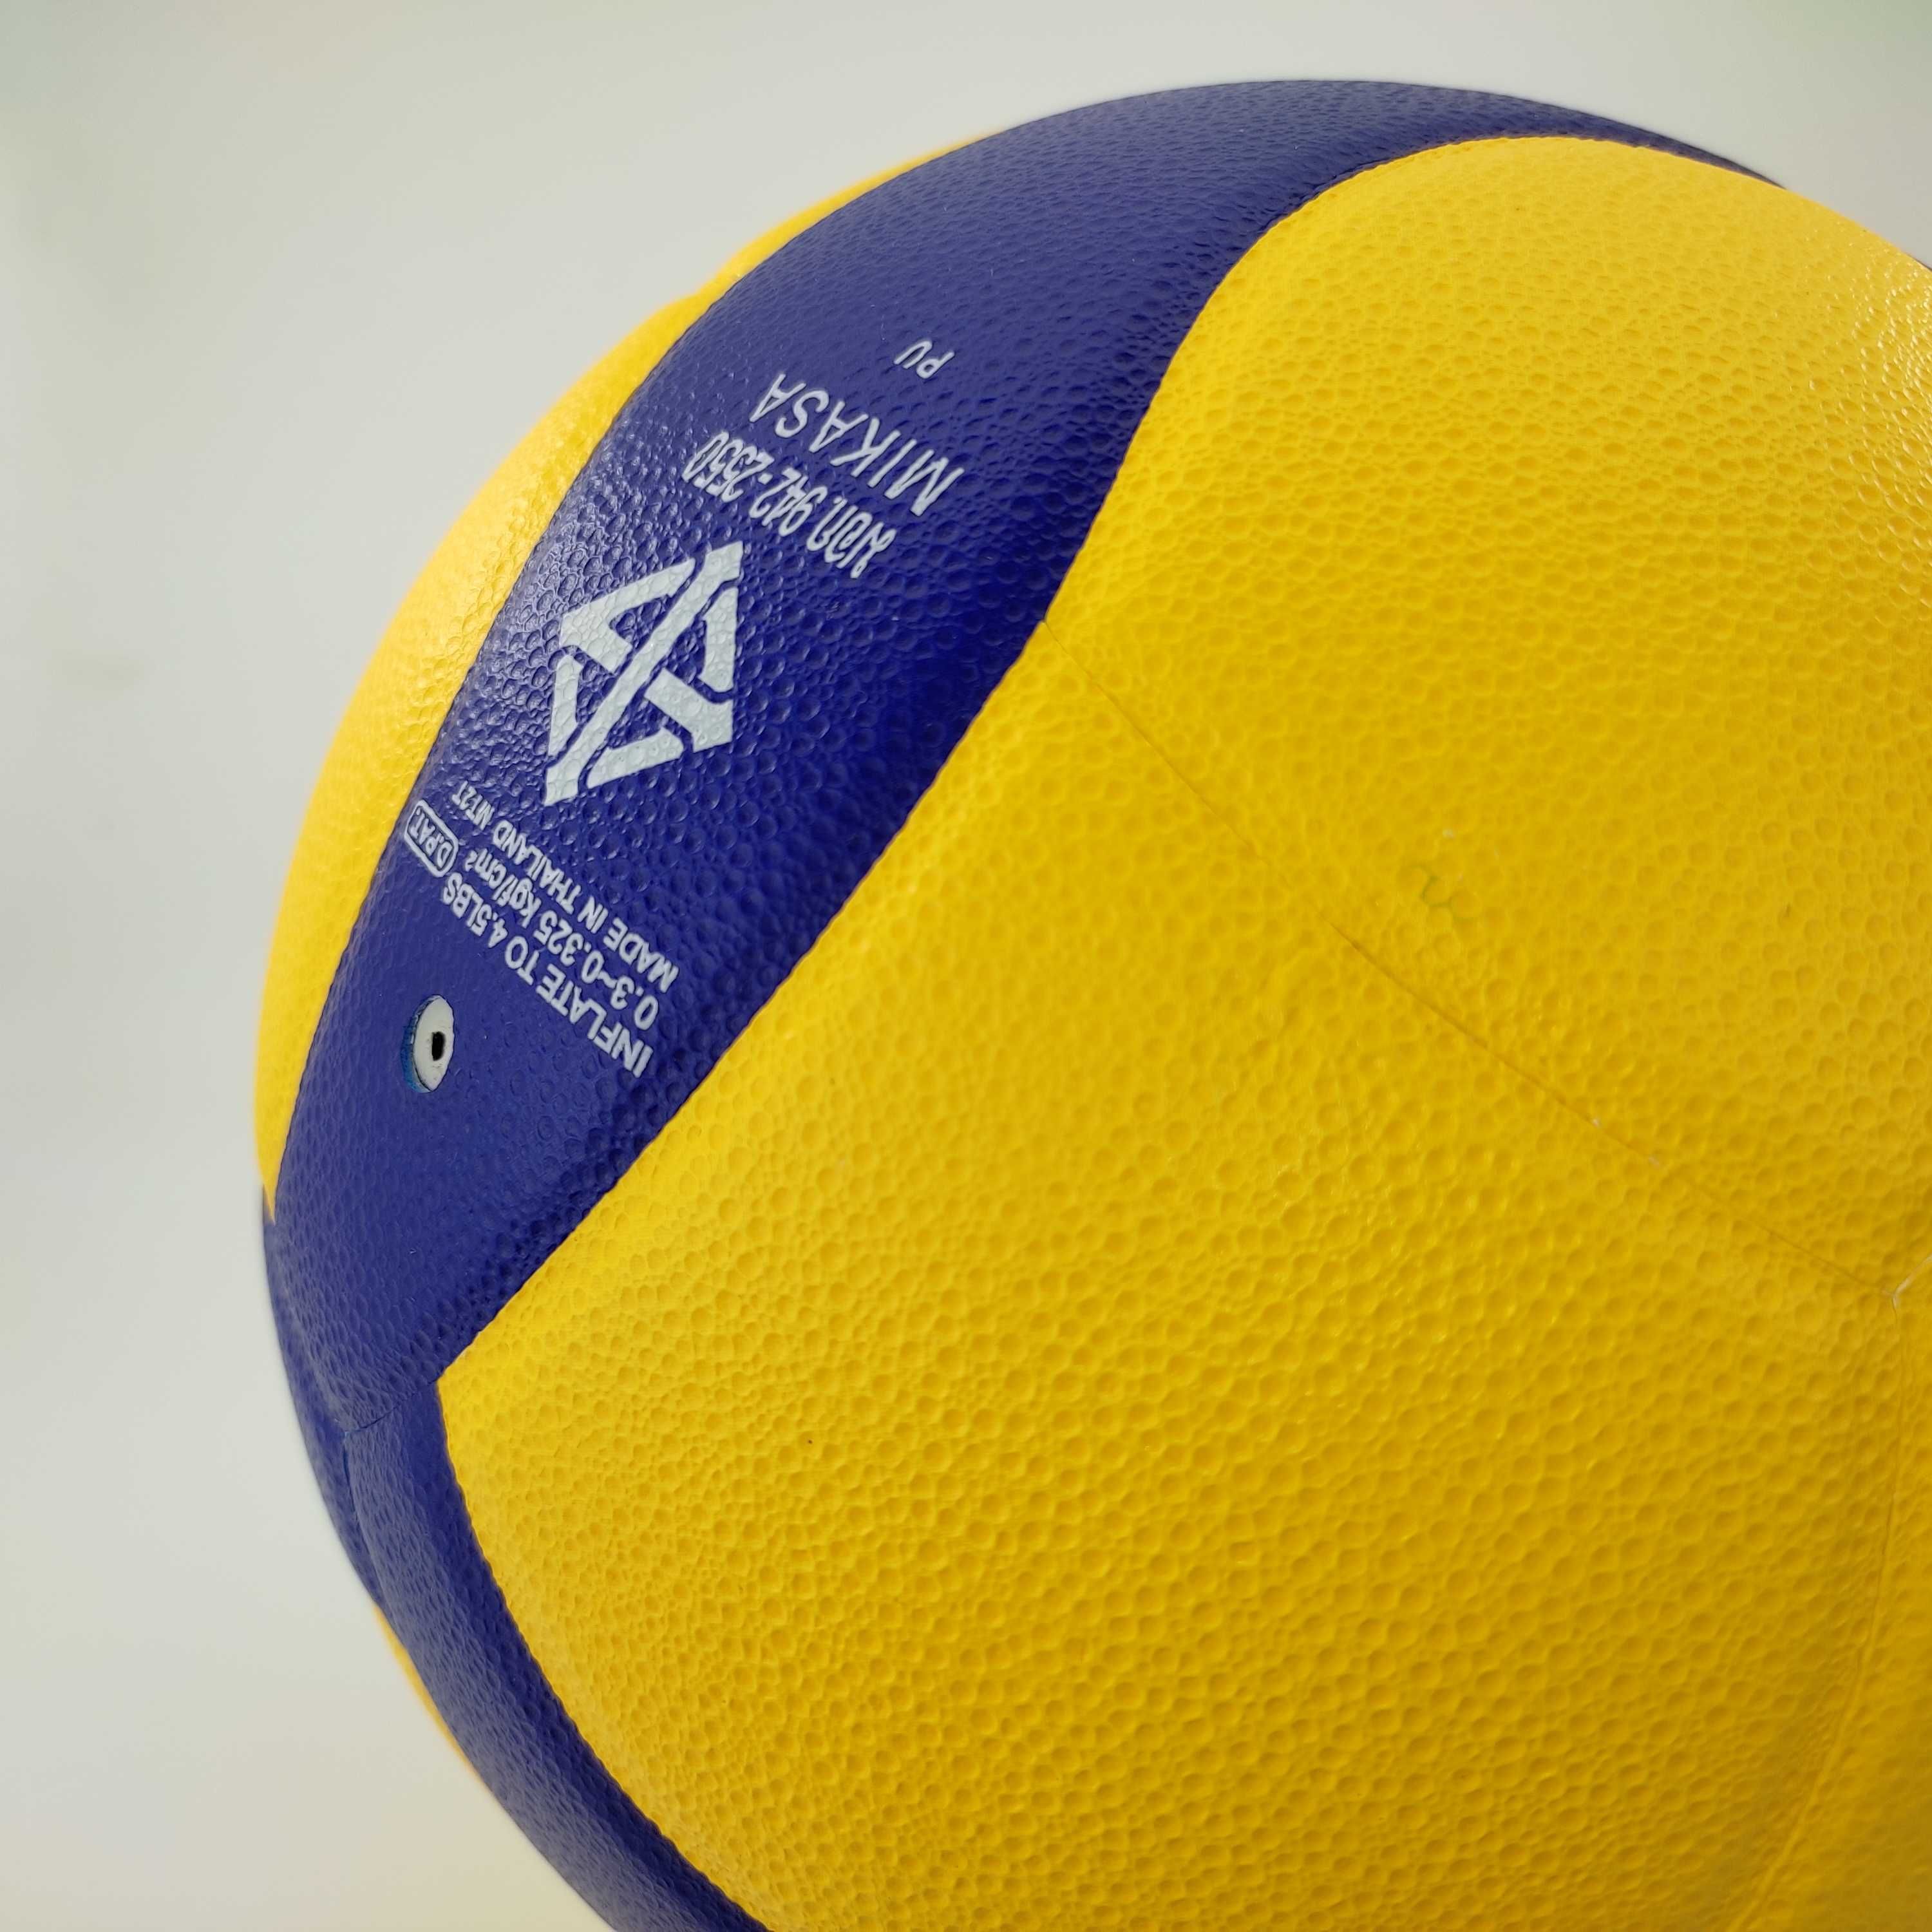 Волейбольный мяч V320W оригинал \ Мяч Mikasa \ Волейбольный мяч Микаса